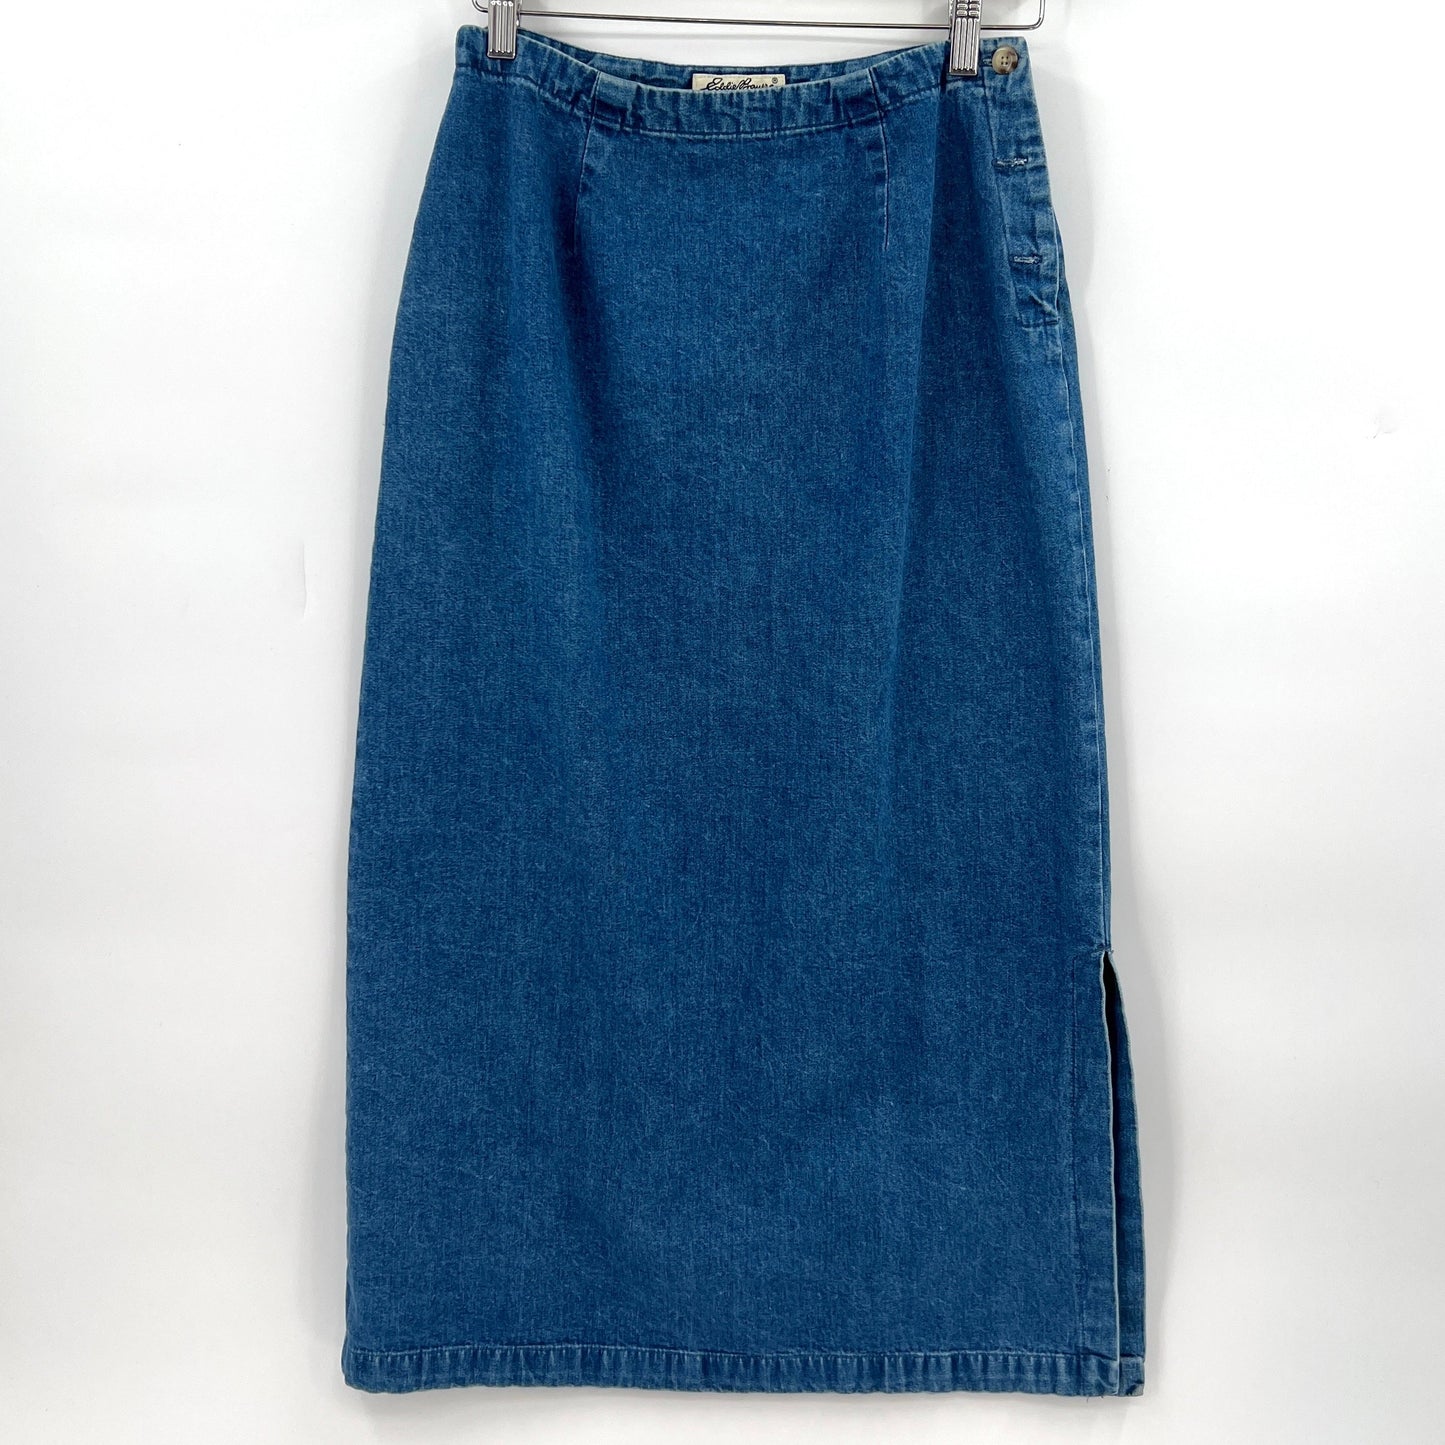 SOLD. Vintage Eddie Bauer Denim Midi/Maxi Skirt